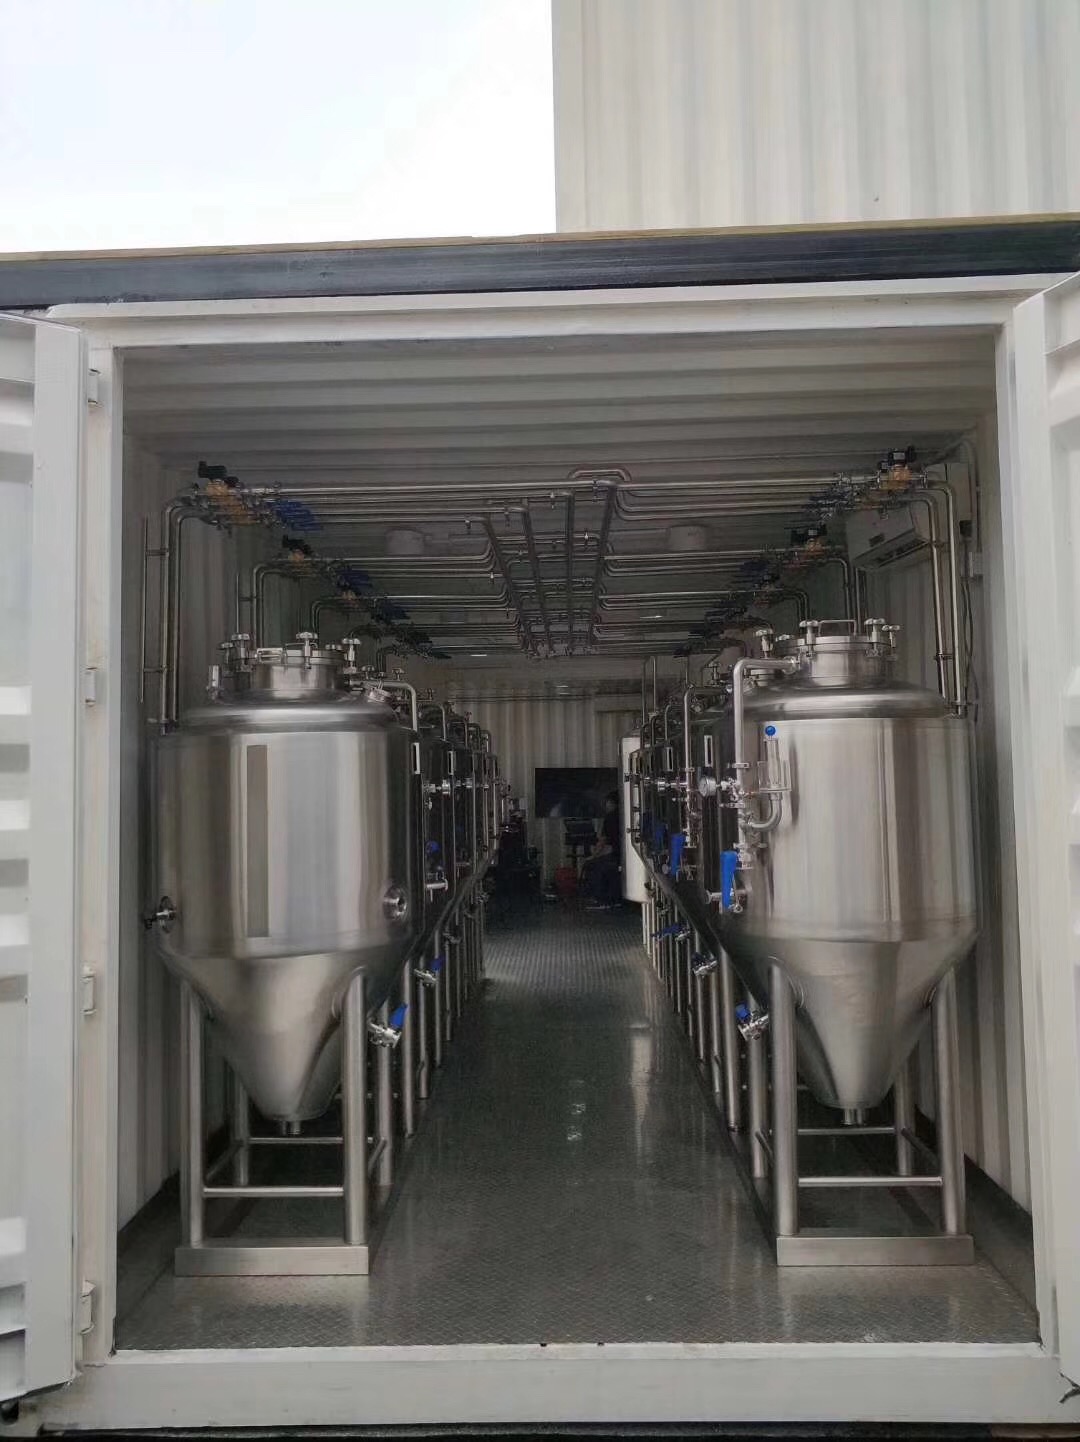 集装箱啤酒设备 集装箱啤酒设备多少钱 集装箱啤酒设备哪家好 集装箱啤酒设备厂家